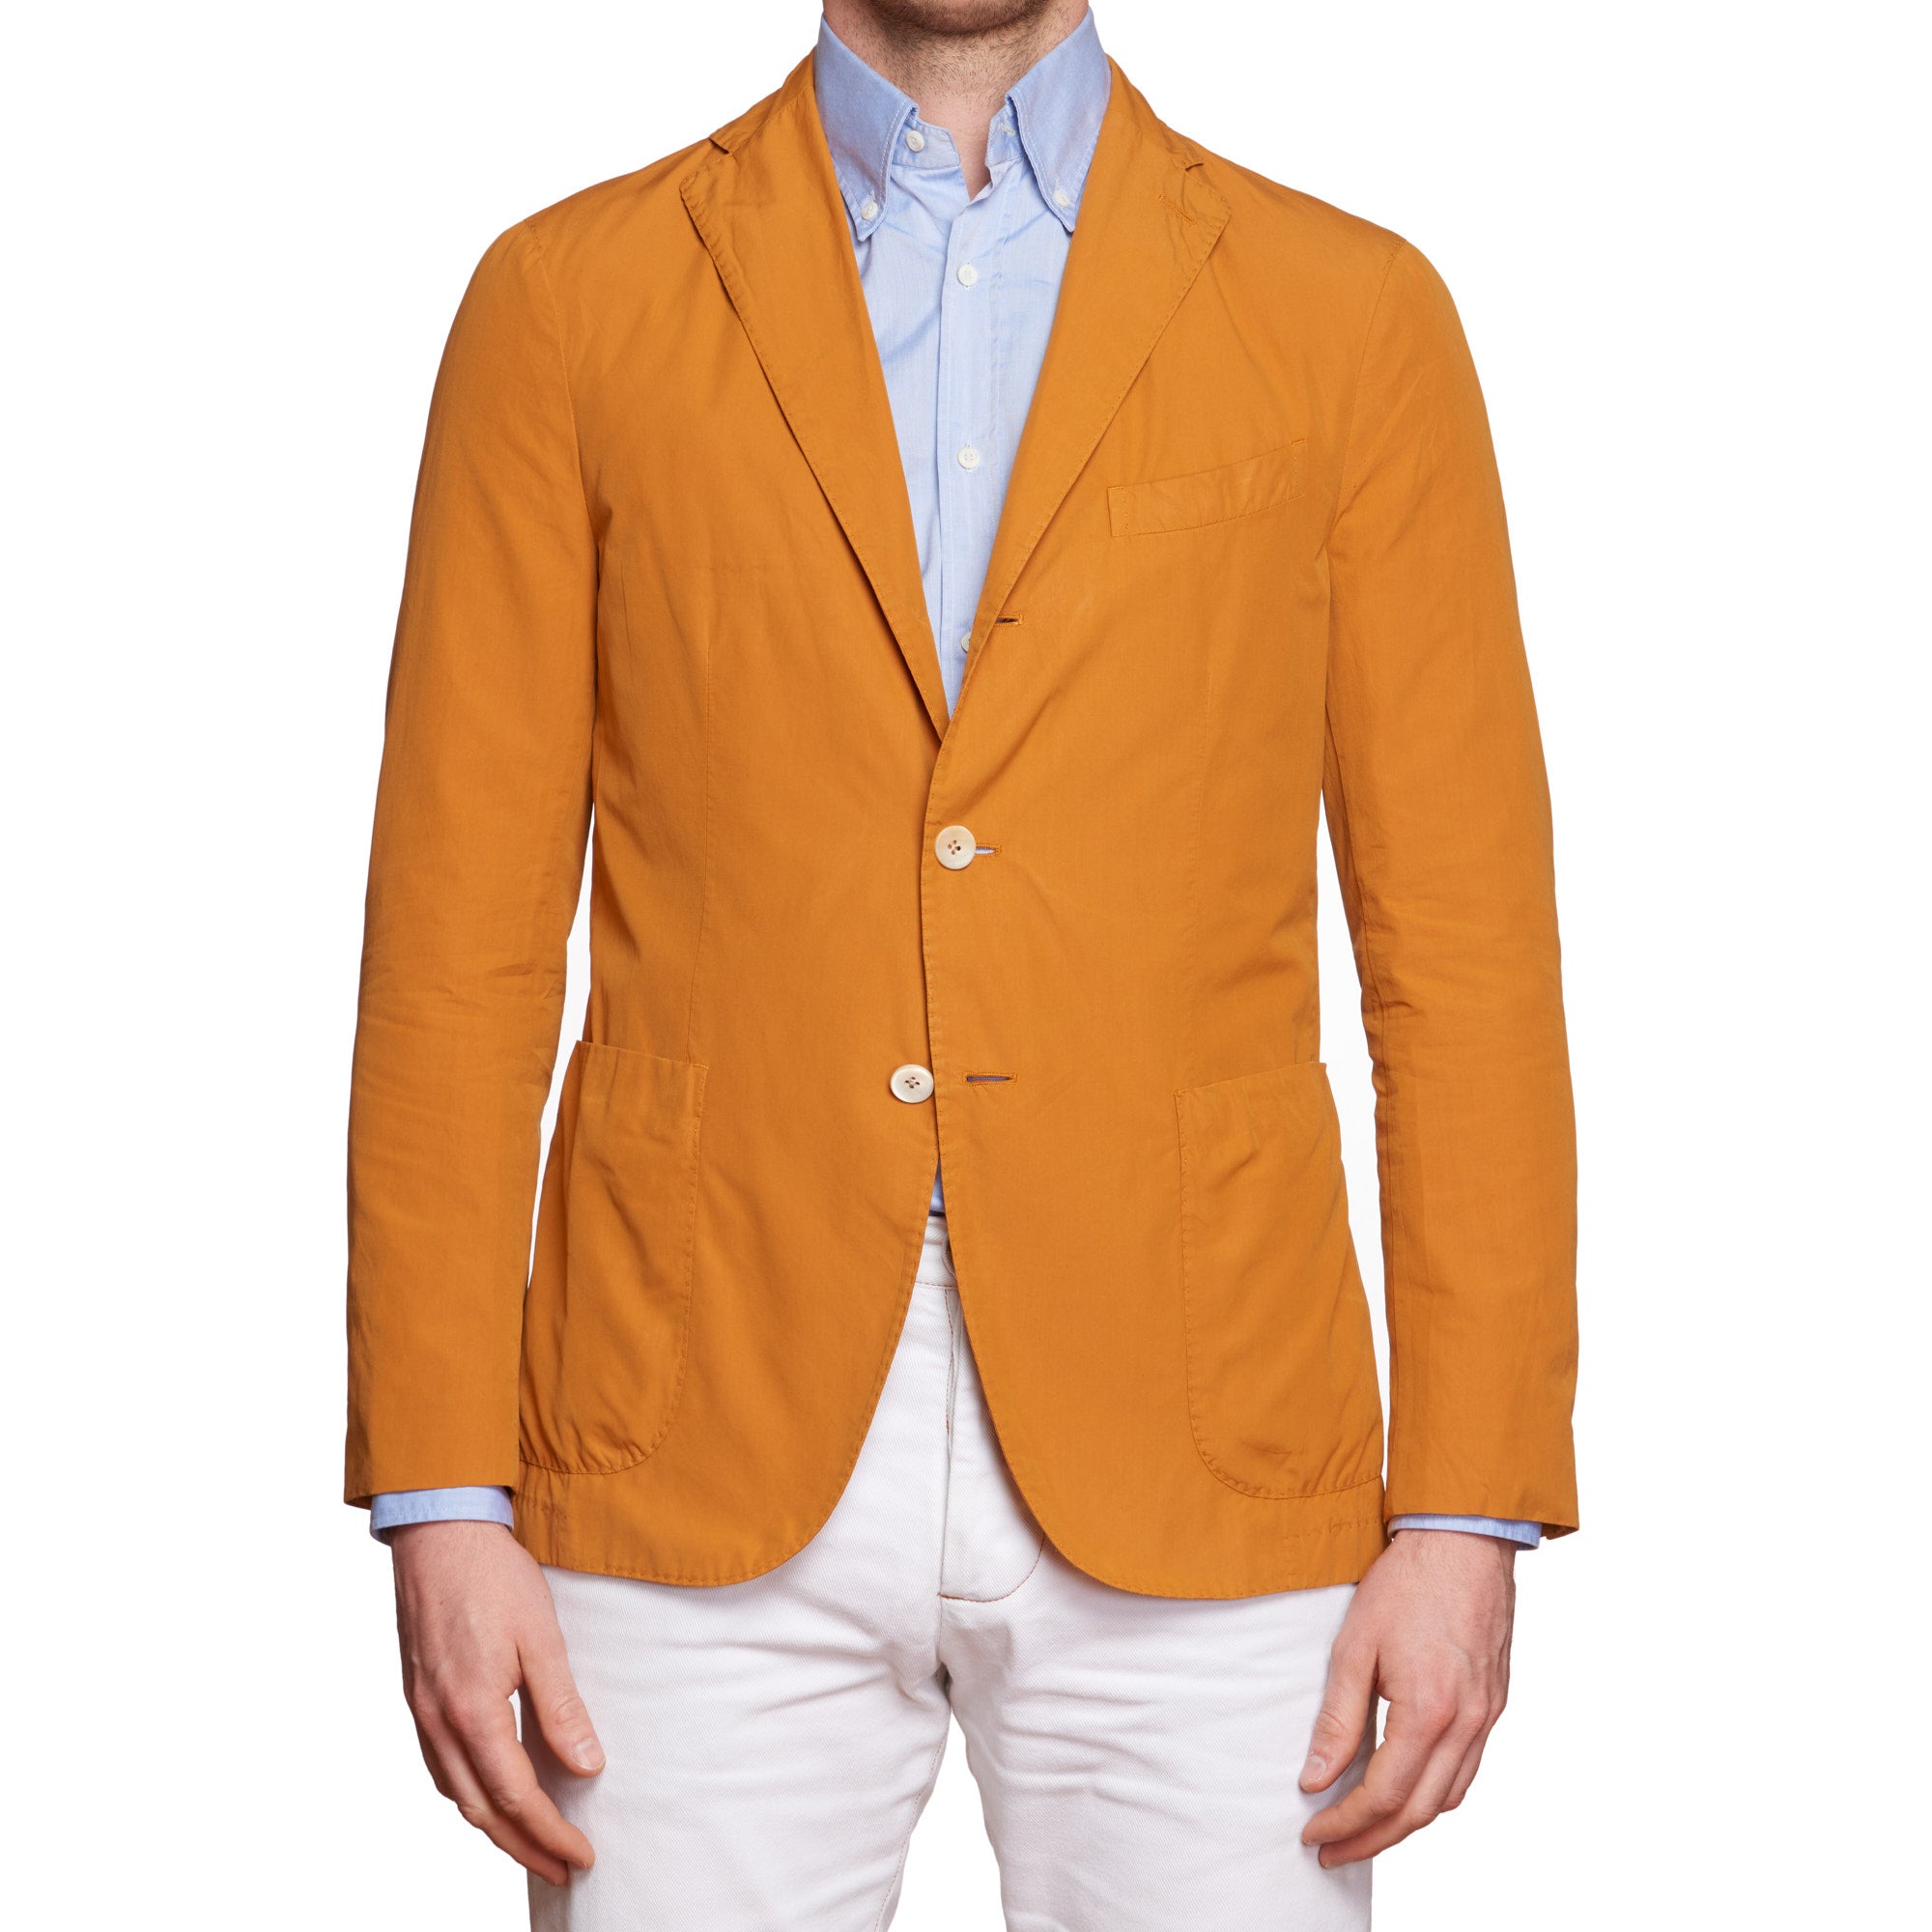 BOGLIOLI Milano "K.Jacket" Orange Cotton Unlined Jacket EU 48 NEW US 38